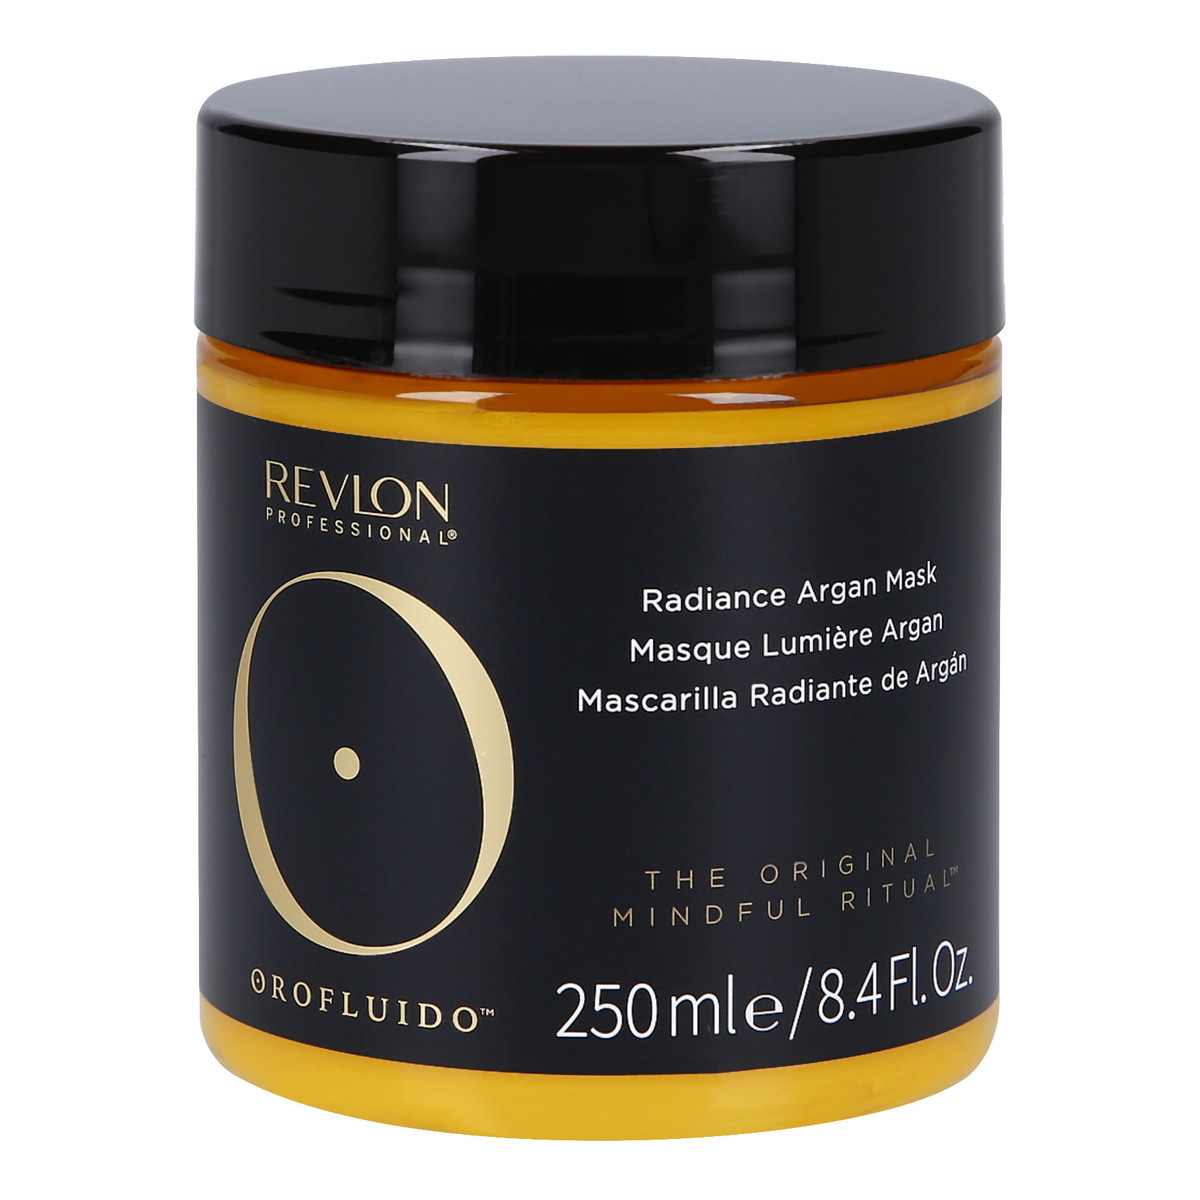 Revlon Orofluido Radiance Argan Mask maska do włosów z olejkiem arganowym 250ml